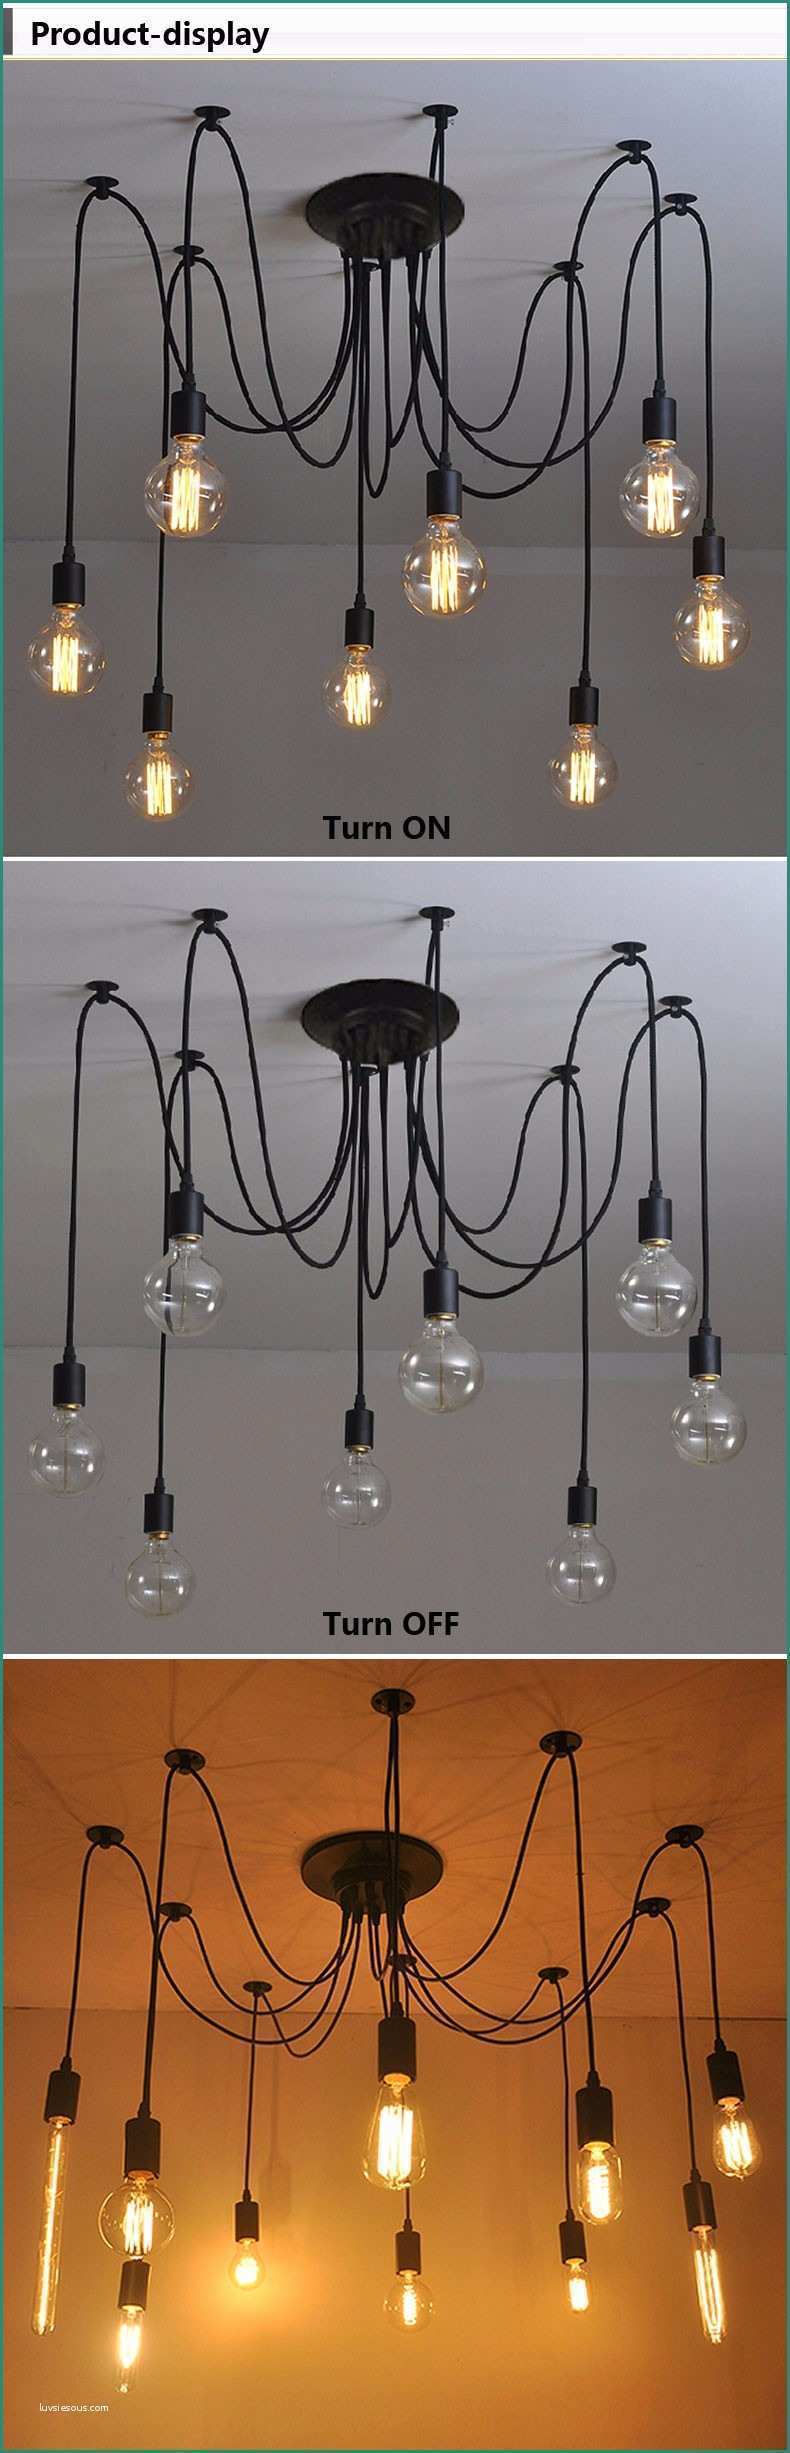 Lampadari Cucina Moderna E Retro Edison Lampada Di Illuminazione Lampadario A forma Di Ragno